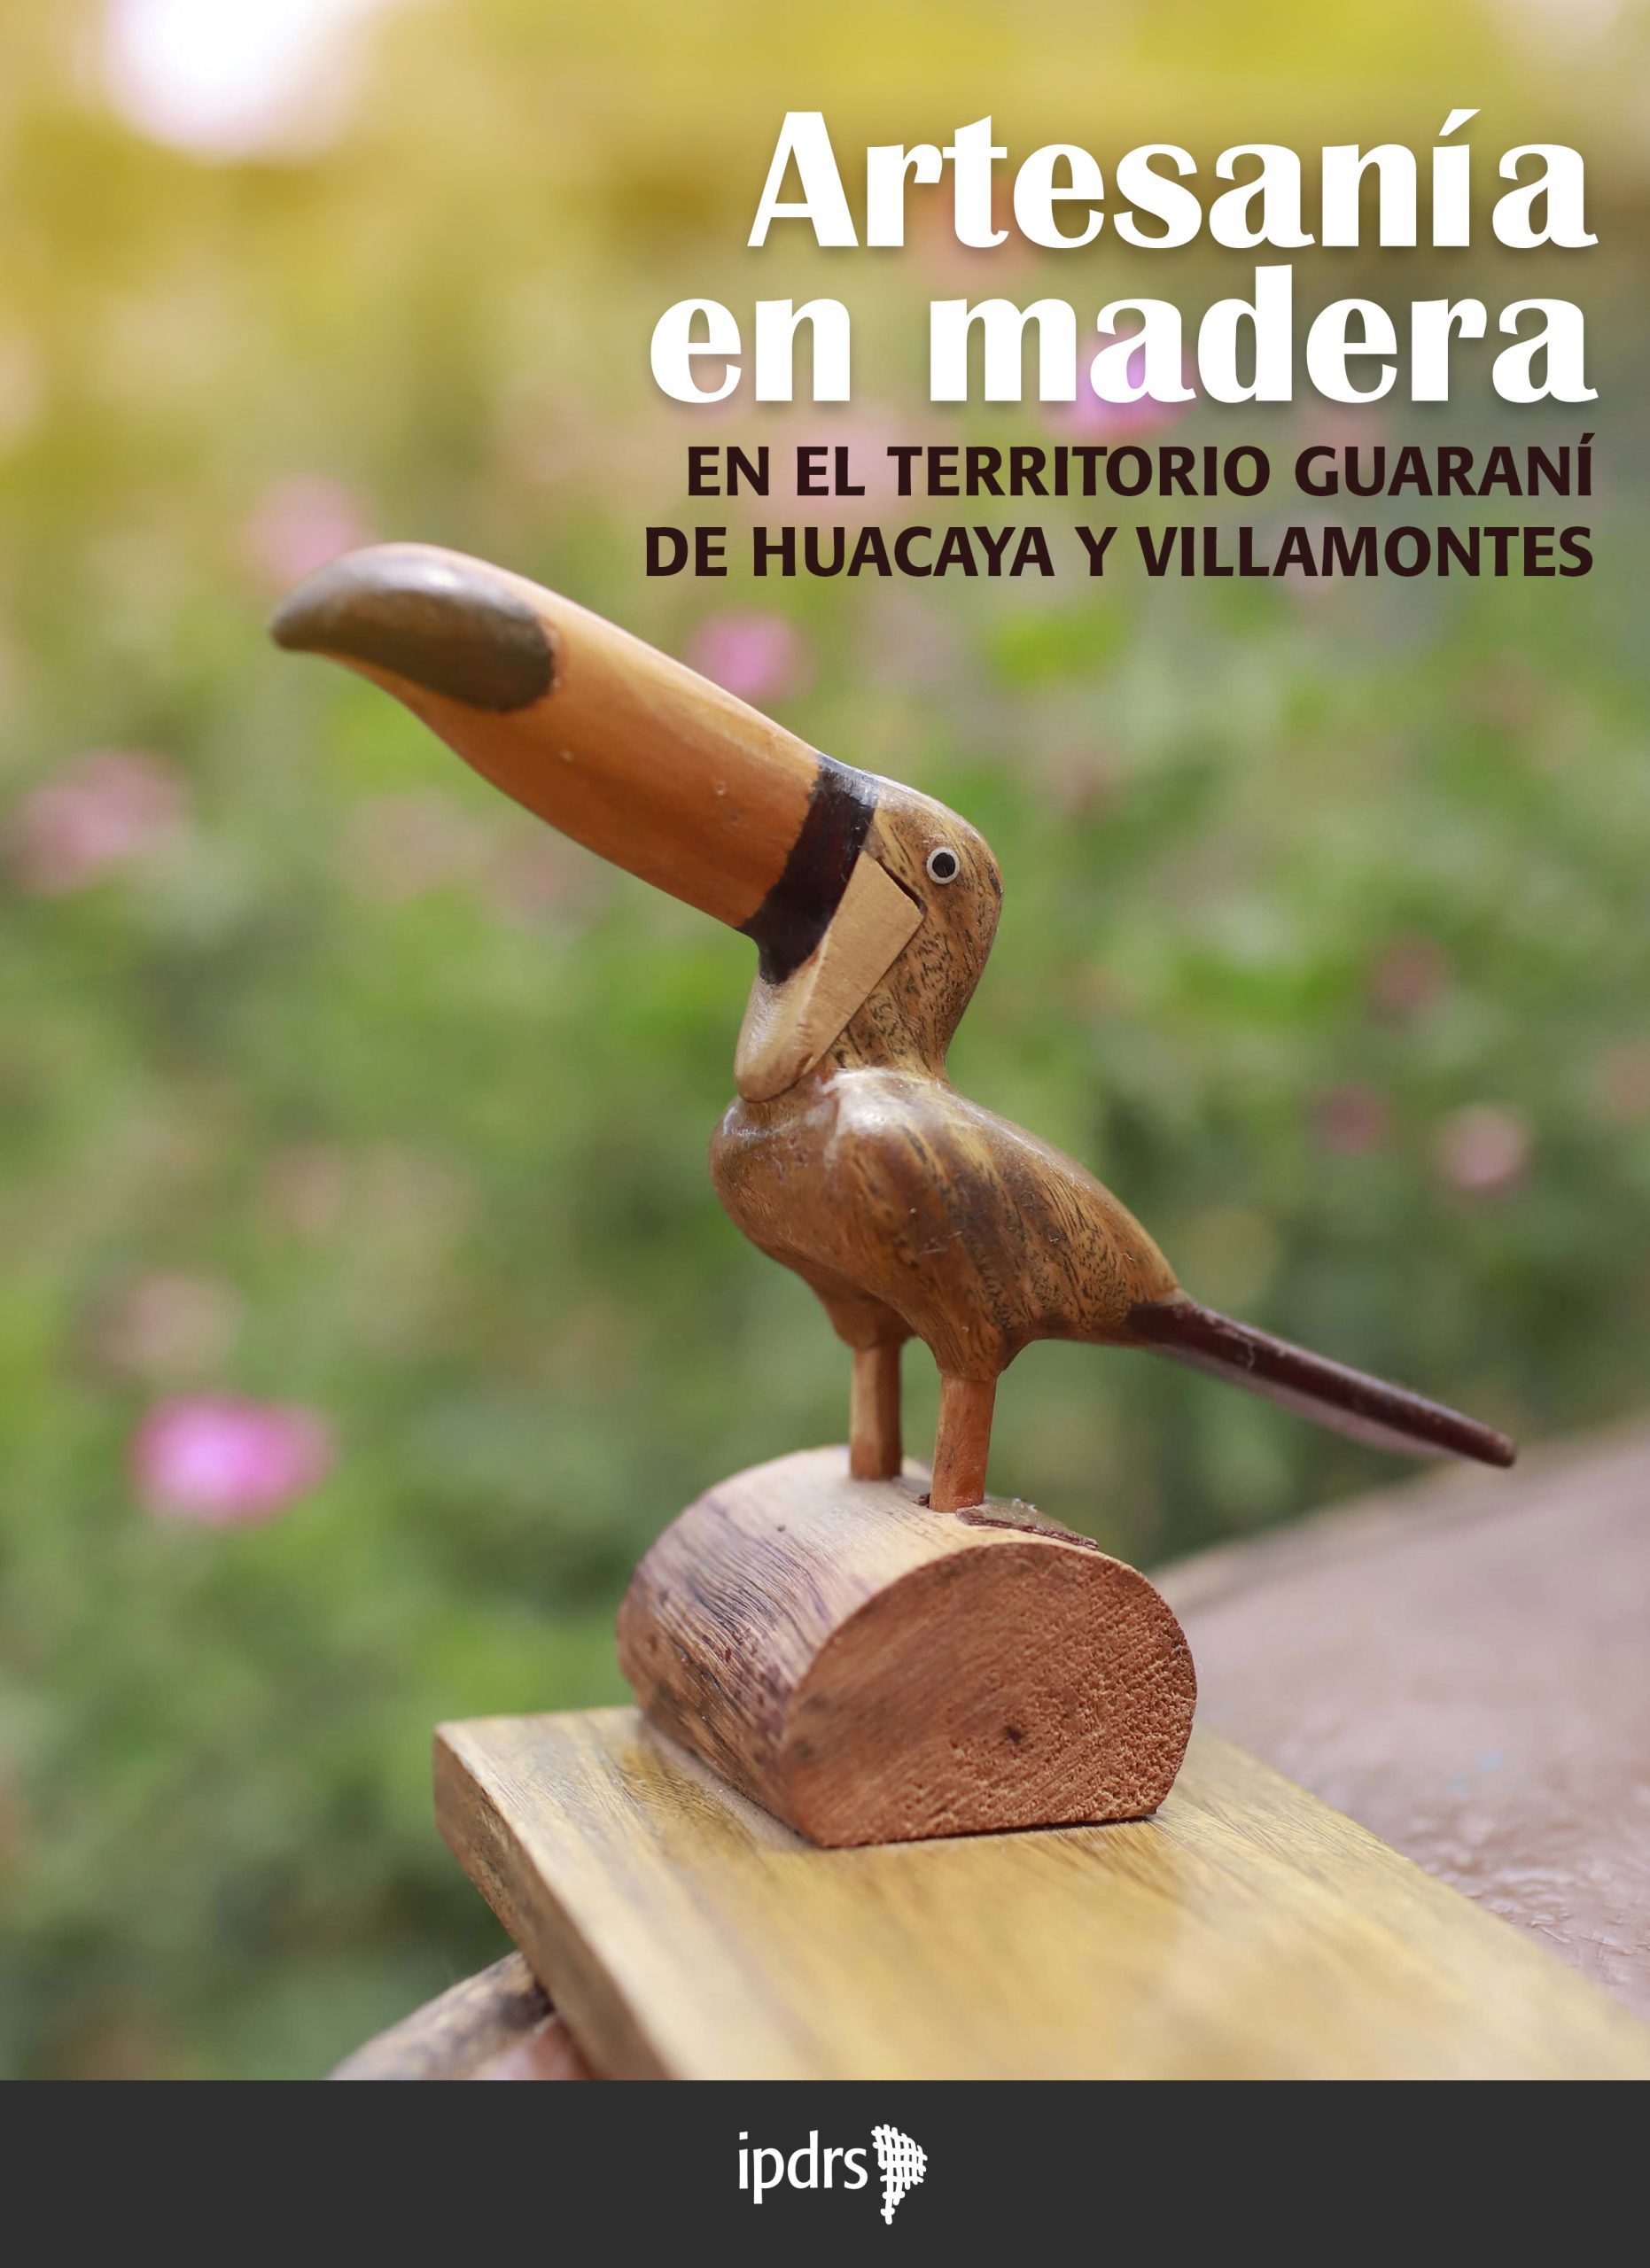 Catálogo. Artesanía en madera en el territorio de Huacaya y Villamontes